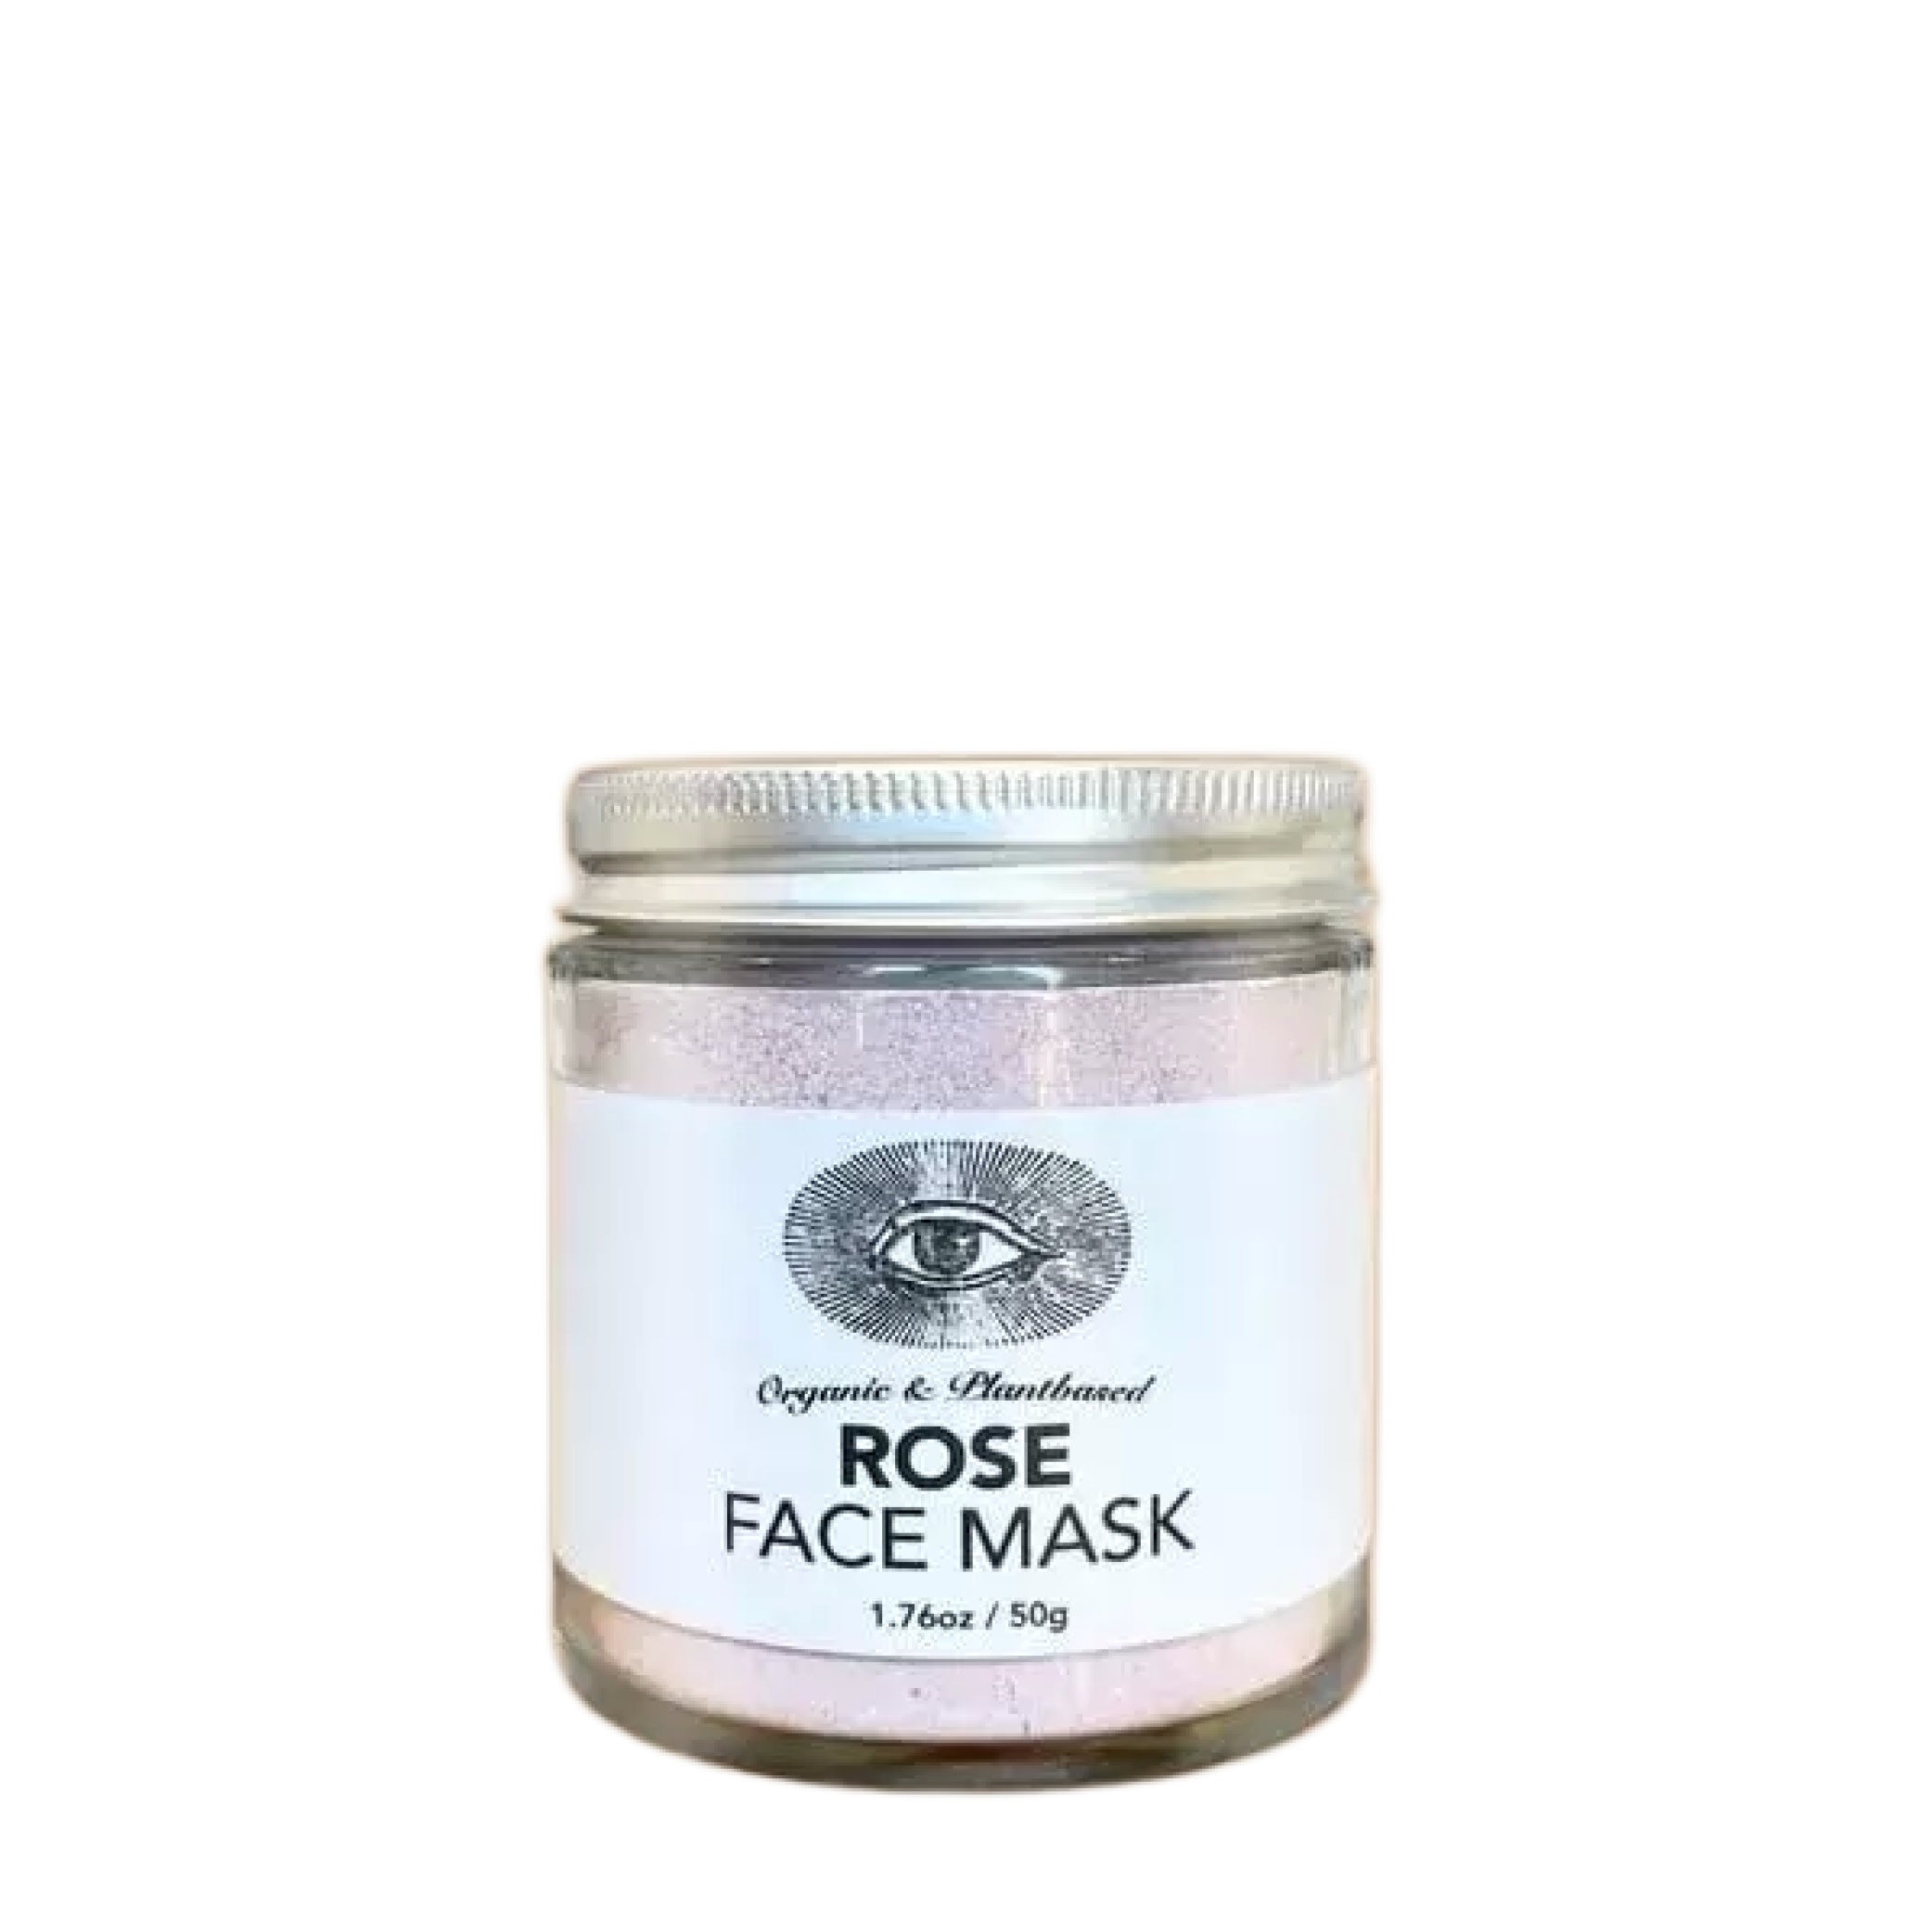 ROSE Face Mask | Detoxify + Hydrate